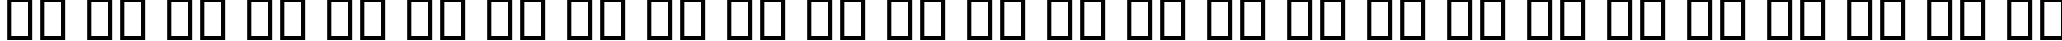 Пример написания английского алфавита шрифтом B Niki Border Italic